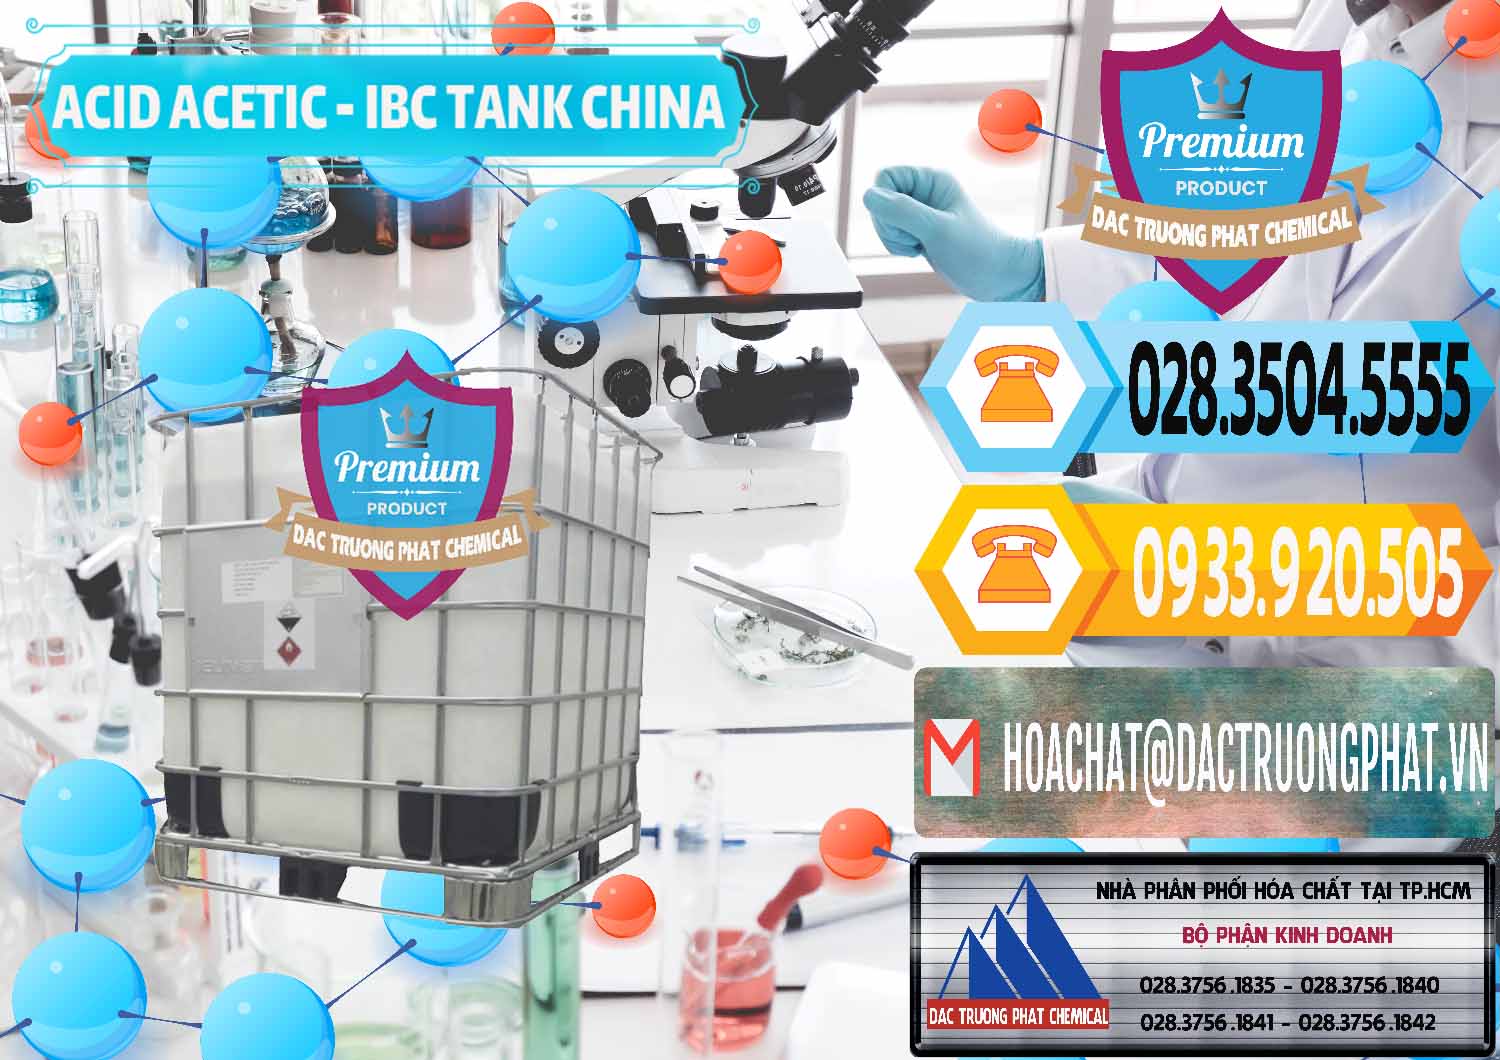 Cty phân phối & bán Acetic Acid – Axit Acetic Tank Bồn IBC Trung Quốc China - 0443 - Nơi chuyên cung ứng & phân phối hóa chất tại TP.HCM - hoachattayrua.net